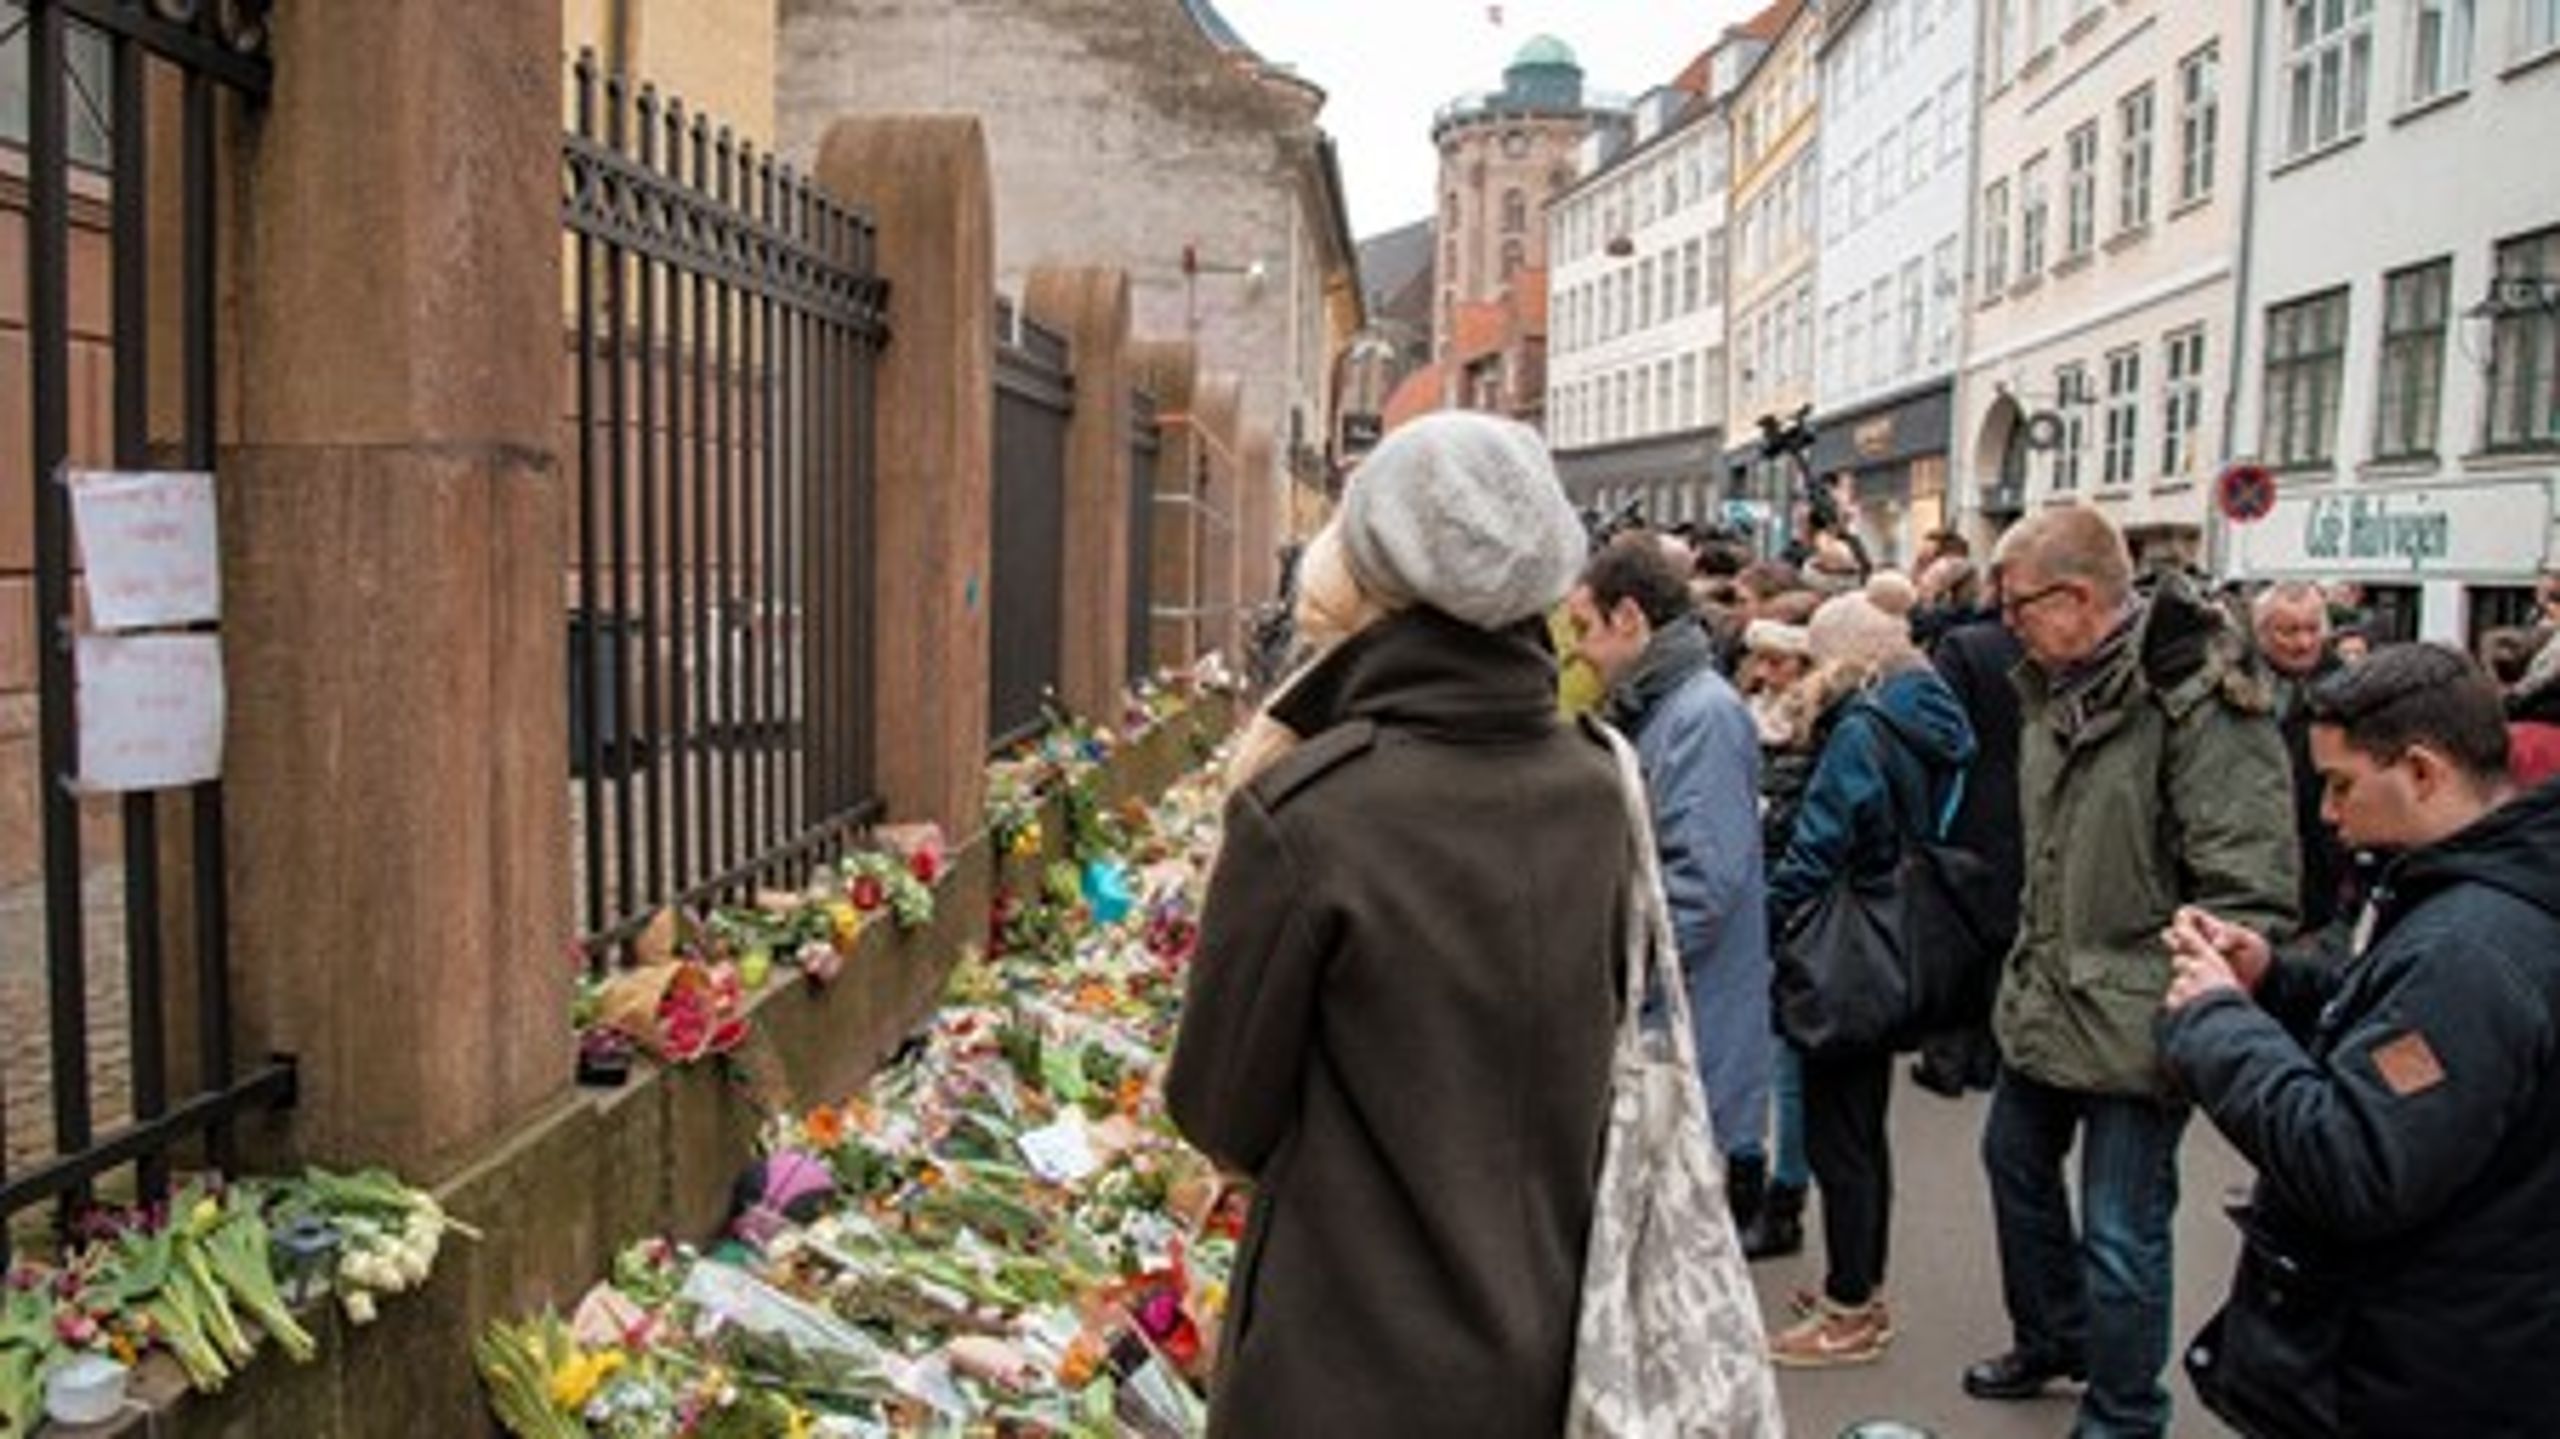 Blomster foran synagogen i Krystalgade, som i februar var mål for et terrorangreb. Justitsminister Mette Frederiksen (S) skal onsdag i samråd om bevogtningen foran synagogen.